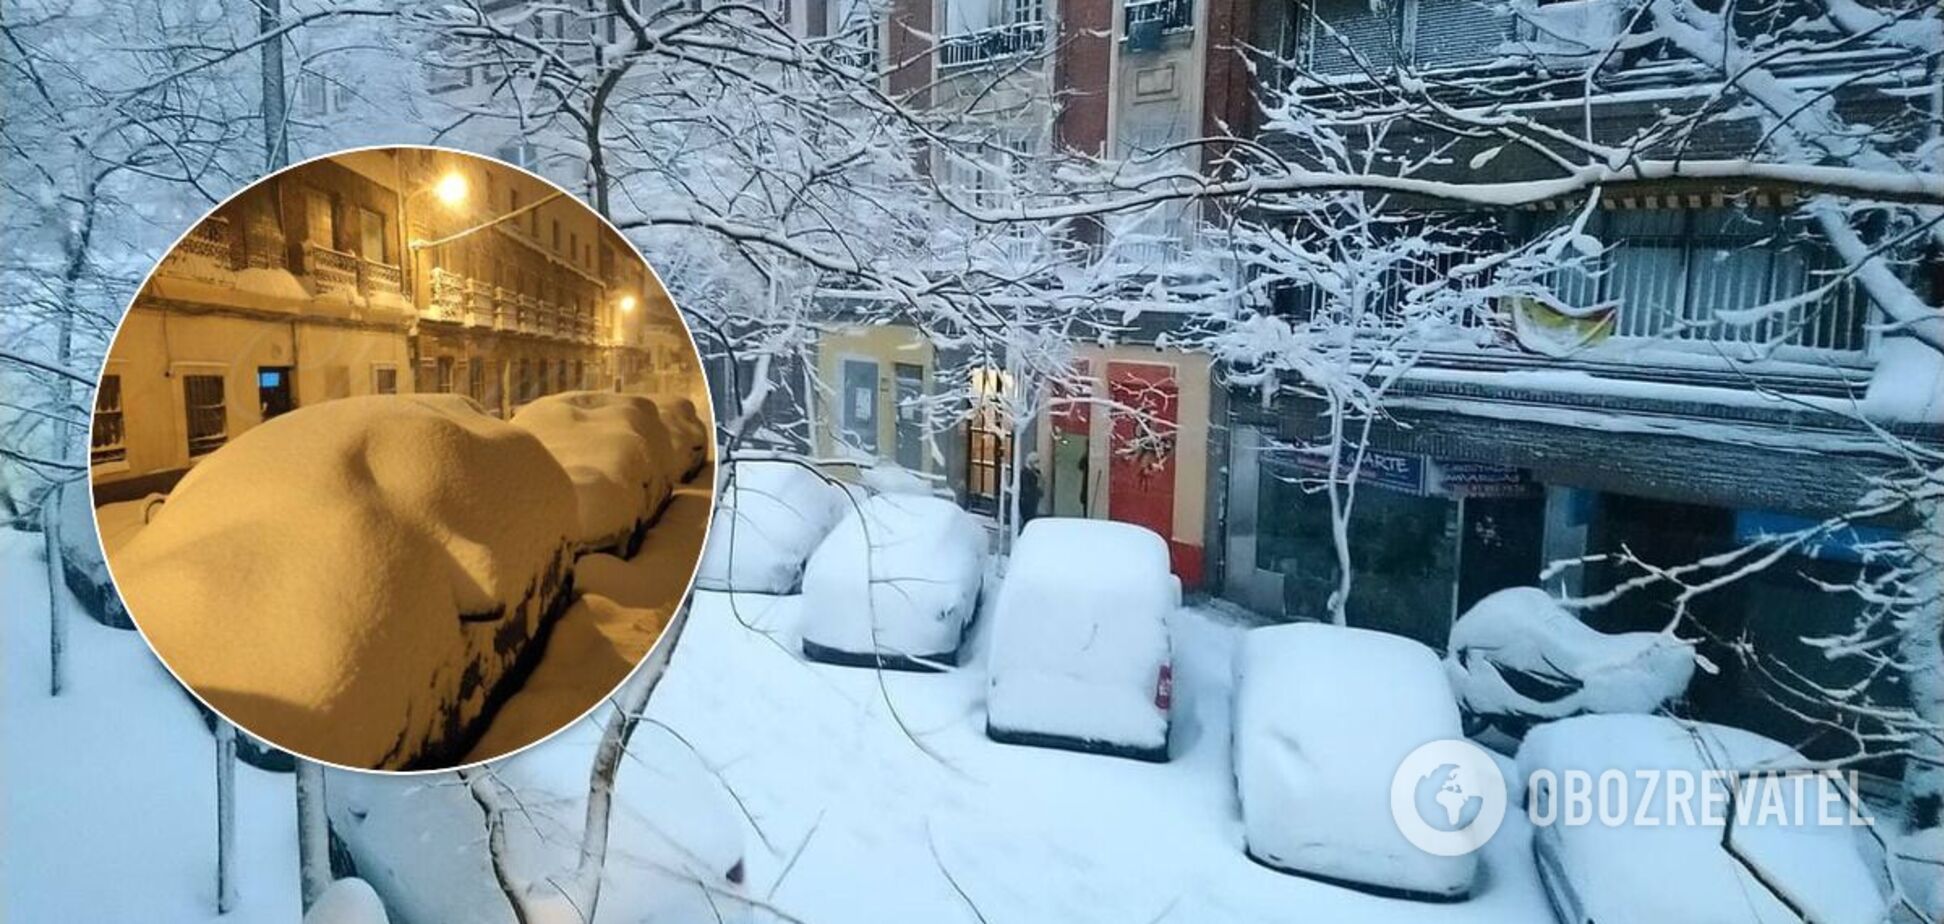 Мадрид накрыл сильнейший снегопад за последние 50 лет, есть погибшие. Фото и видео